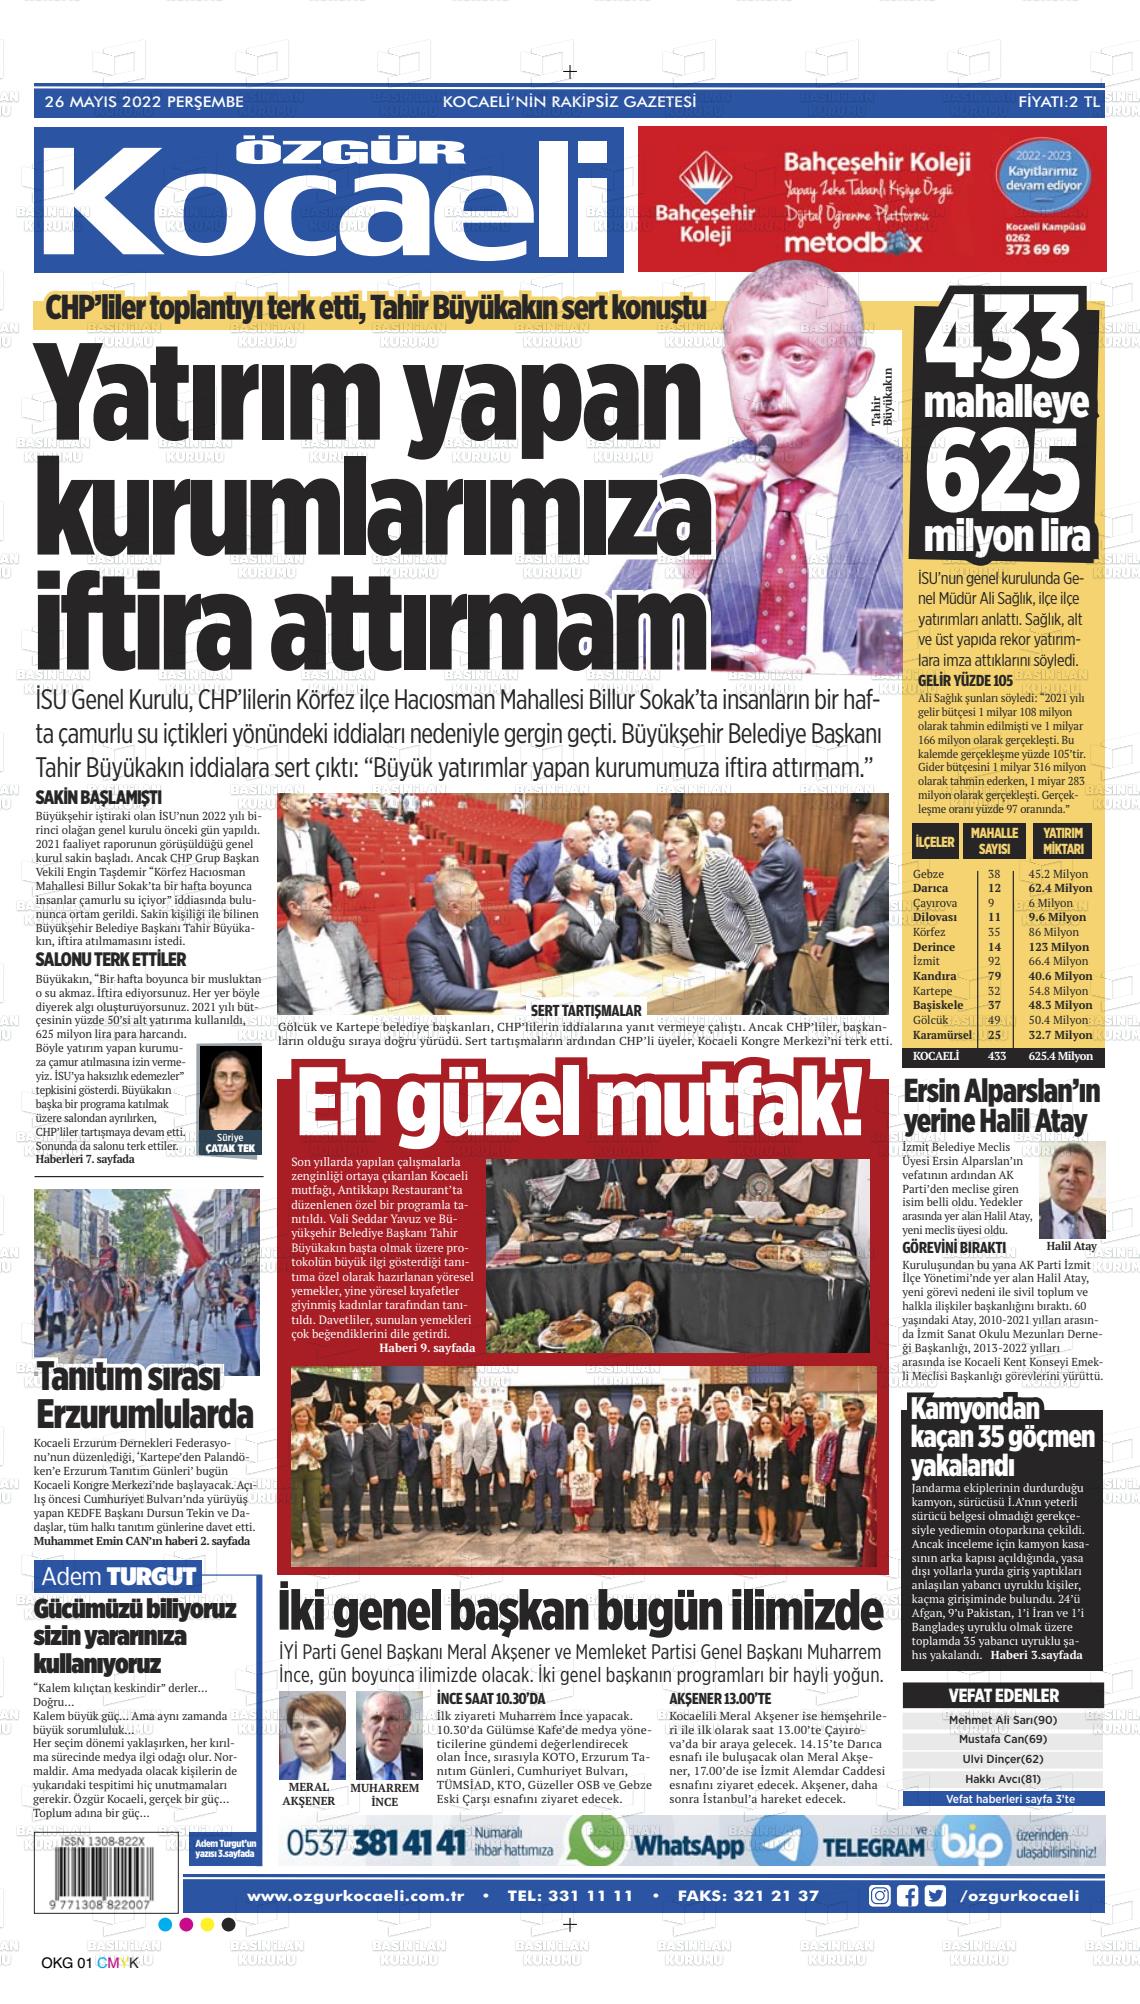 26 Mayıs 2022 Özgür Kocaeli Gazete Manşeti